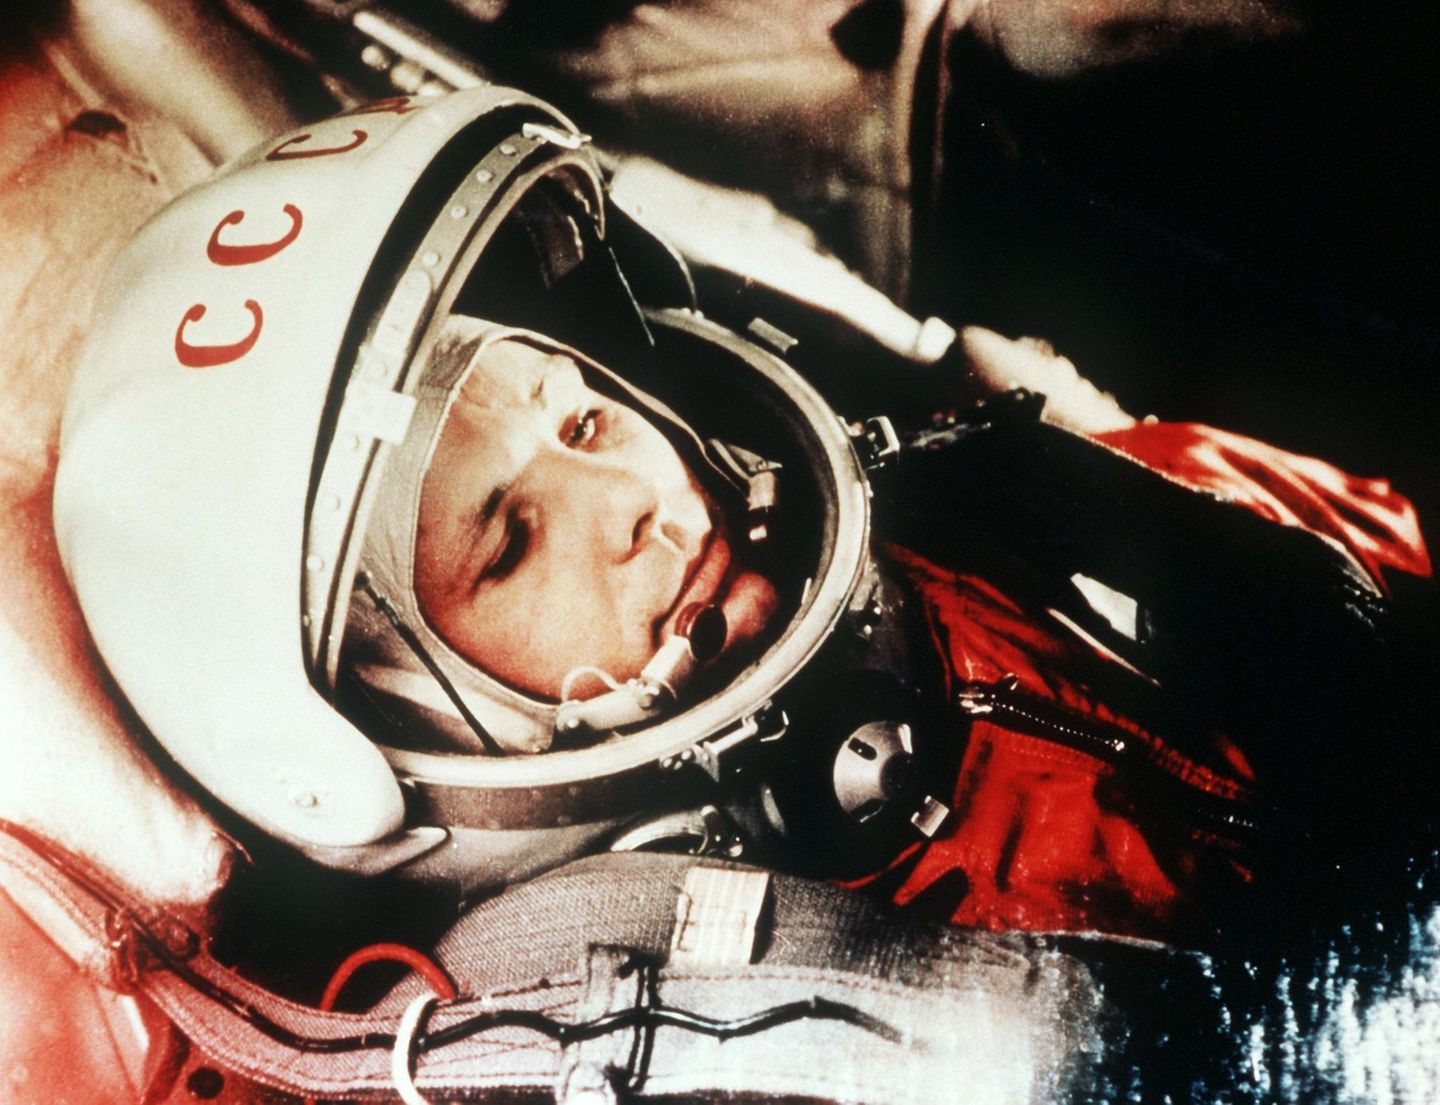 12. April 1961: Der sowjetische Kosmonaut Juri Gagarin fliegt als erster Mensch ins All  "Auf geht's" waren die schlichten Worte, mit denen Gagarin den Start der Wostok-Rakete ins All kommentierte. Vom Weltraumbahnhof Baikonur ging der 27-jährige Kosmonaut vor sechzig Jahren auf seine historische Reise und wurde zum größten Helden der Sowjetunion. Ganze 108 Minuten dauerte der Flug im Orbit, dann landete Gagarin mit einem Fallschirm auf einem Feld in der südrussischen Region Saratow. Zuvor hatte er sich mit einem Schleudersitz aus seiner Raumkapsel katapultiert. Die ersten Menschen, die ihm begegneten, waren ein Mädchen und dessen Großmutter, die gerade Kartoffeln ausgruben - sie erstarrten vor Furcht. "Habt keine Angst, ich bin Sowjetbürger wie Ihr, ich bin aus dem Weltall zurückgekehrt", beruhigte Gagarin die beiden. Sein Flug in andere Sphären war ein Triumph für die Sowjetunion im Kalten Krieg und versetzte die USA in einen Schockzustand. Die Amerikaner nahmen Gagarins Flug zum Anlass, ihr eigenes Apollo-Programm zu forcieren. Volksheld Gagarin erlebte die Mondlandung des Klassenfeindes nicht mehr. 1968 verunglückte er bei einem Übungsflug in einer MiG.